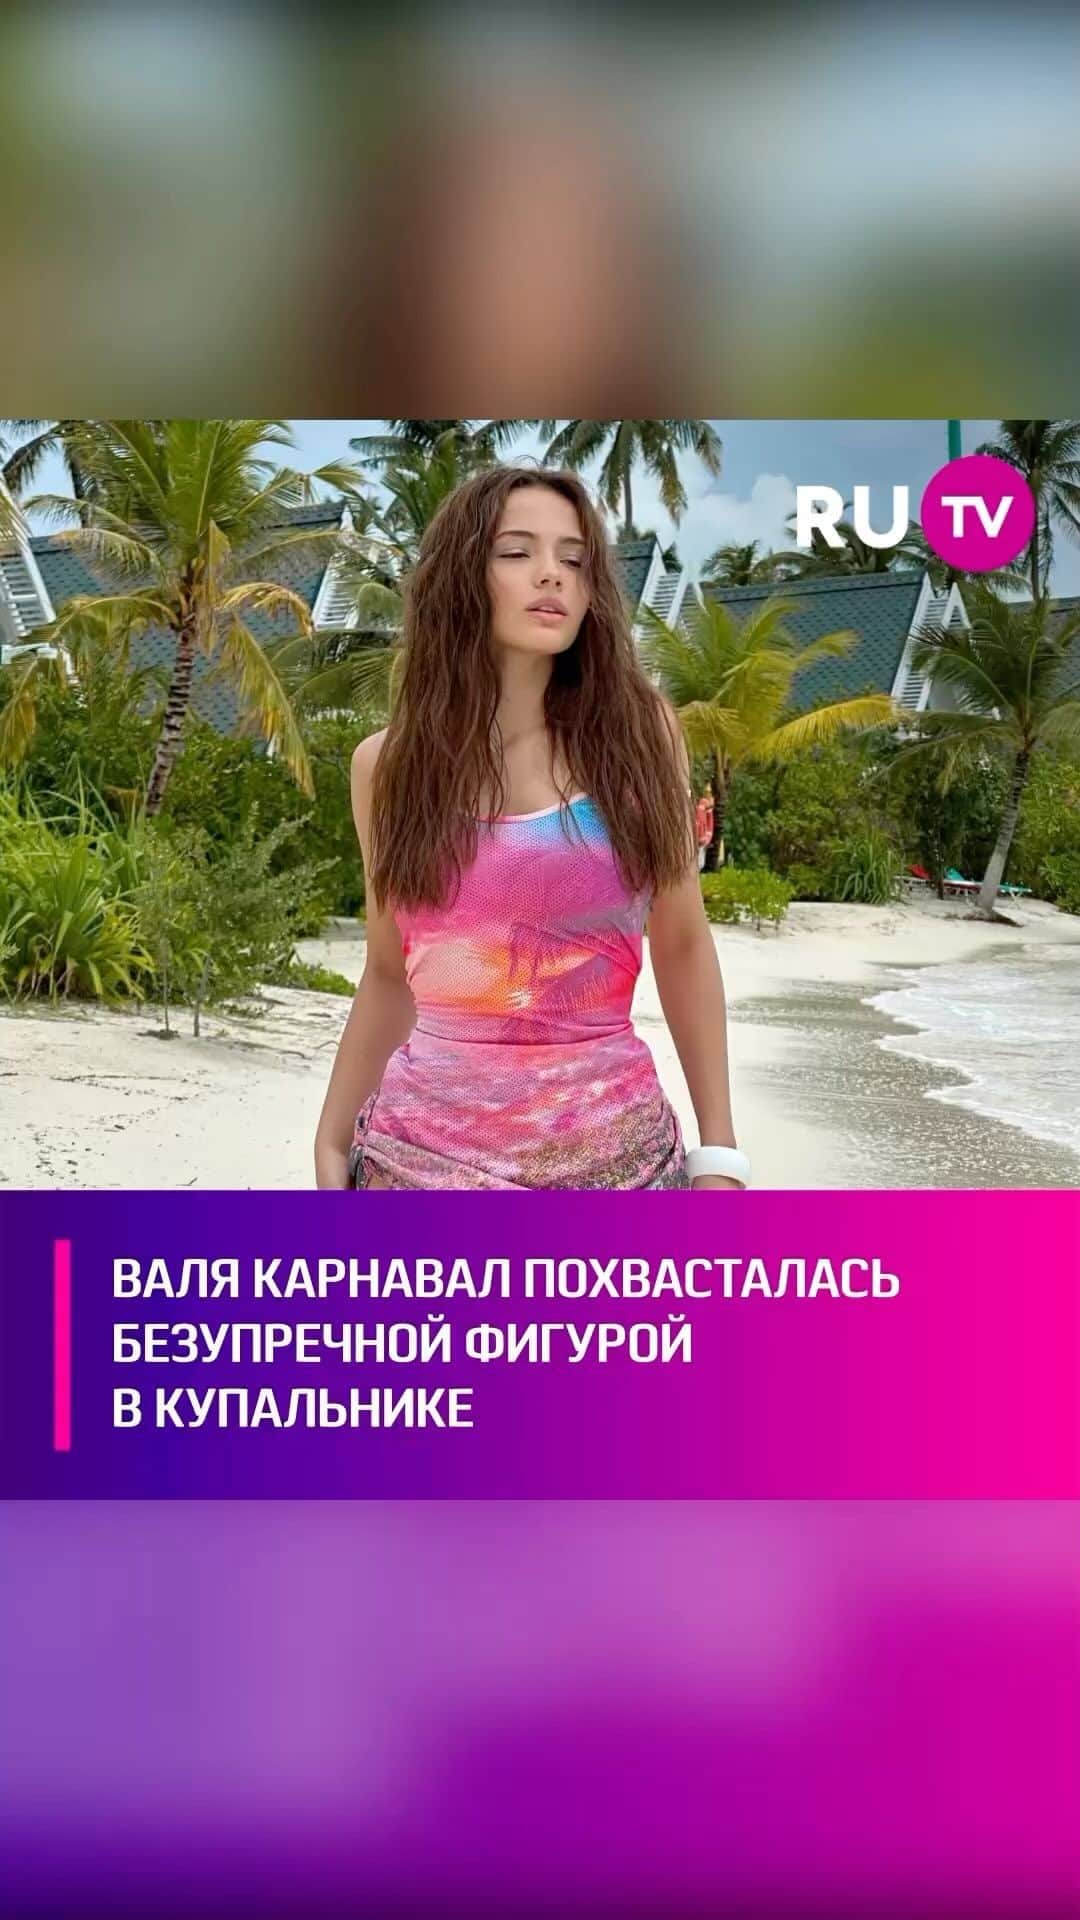 RU.TVのインスタグラム